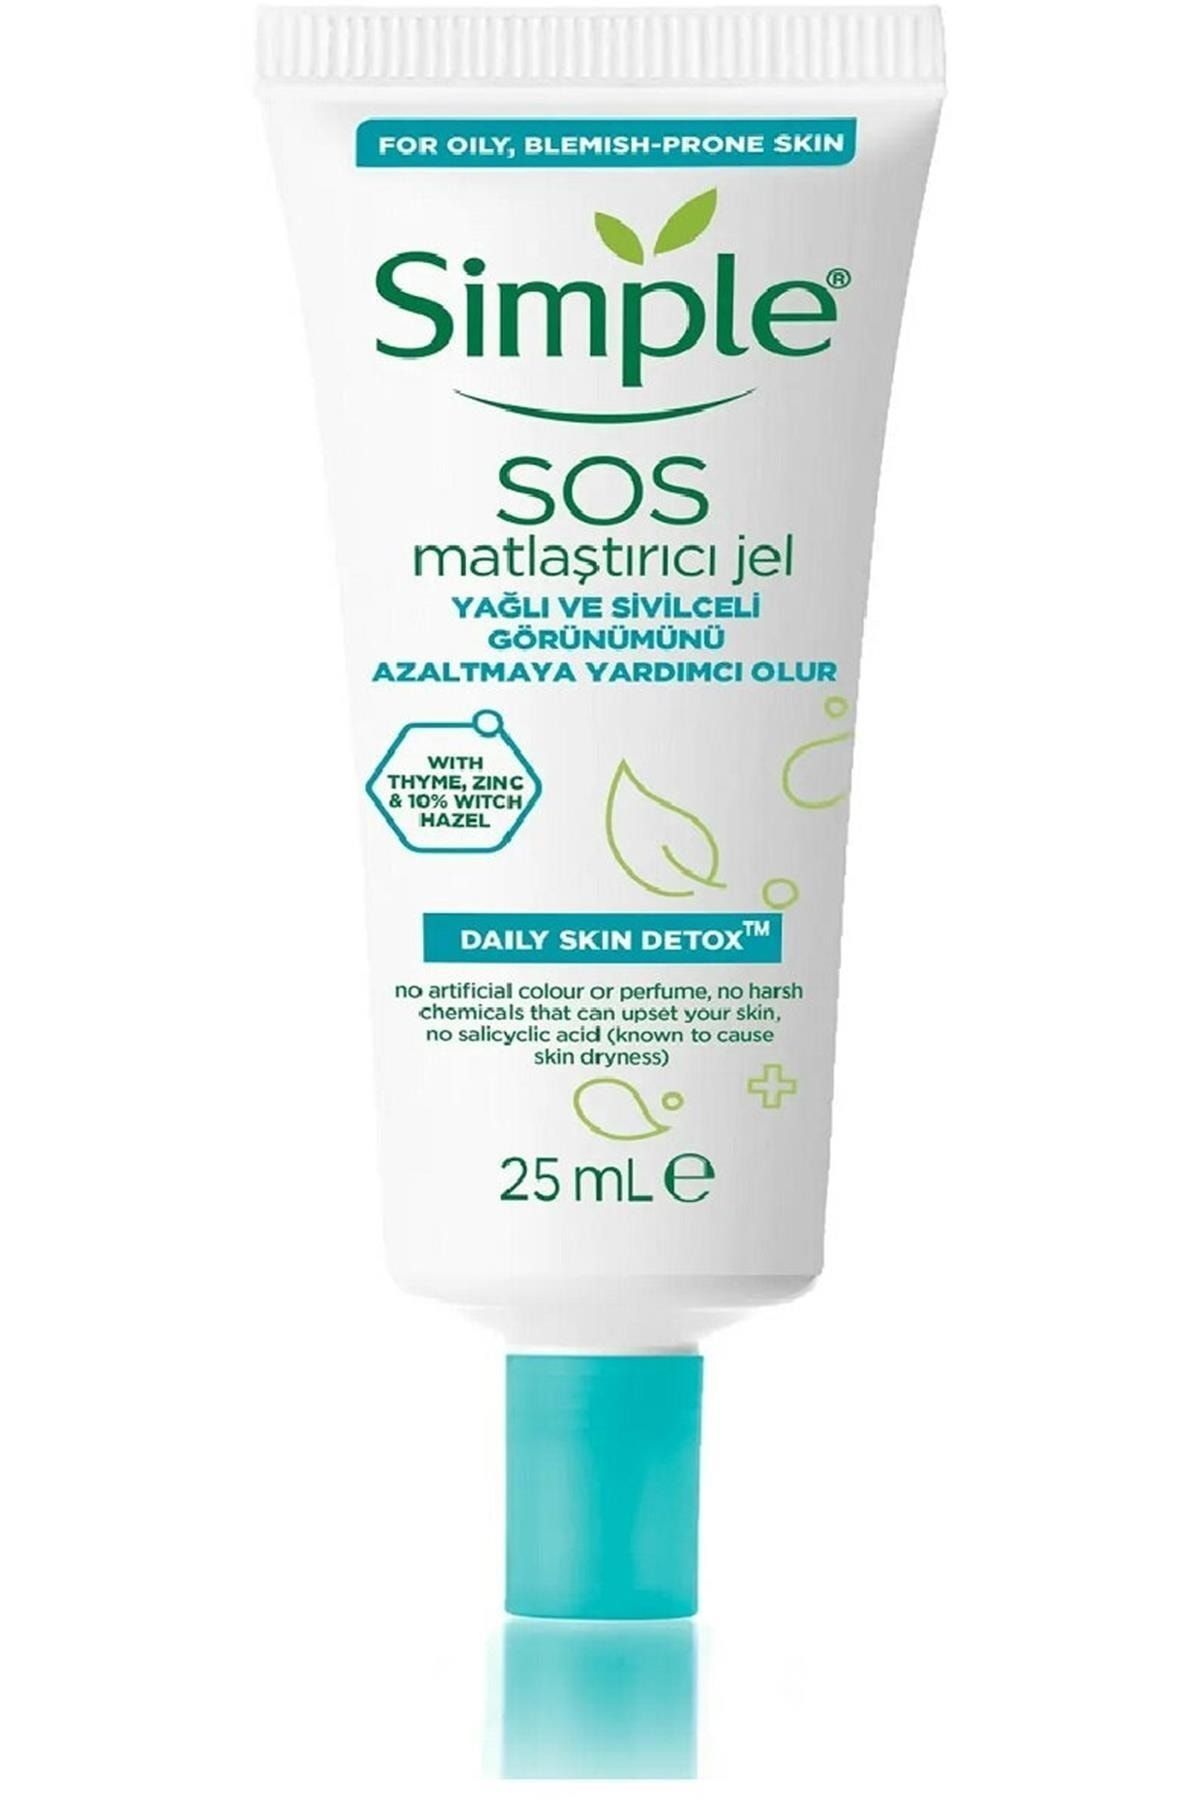 Simple Daily Skin Detox Sos Yağlı/karma Ciltler Için Sos Sivilce Jeli Matlaştırıcı Jel_25 Ml.,